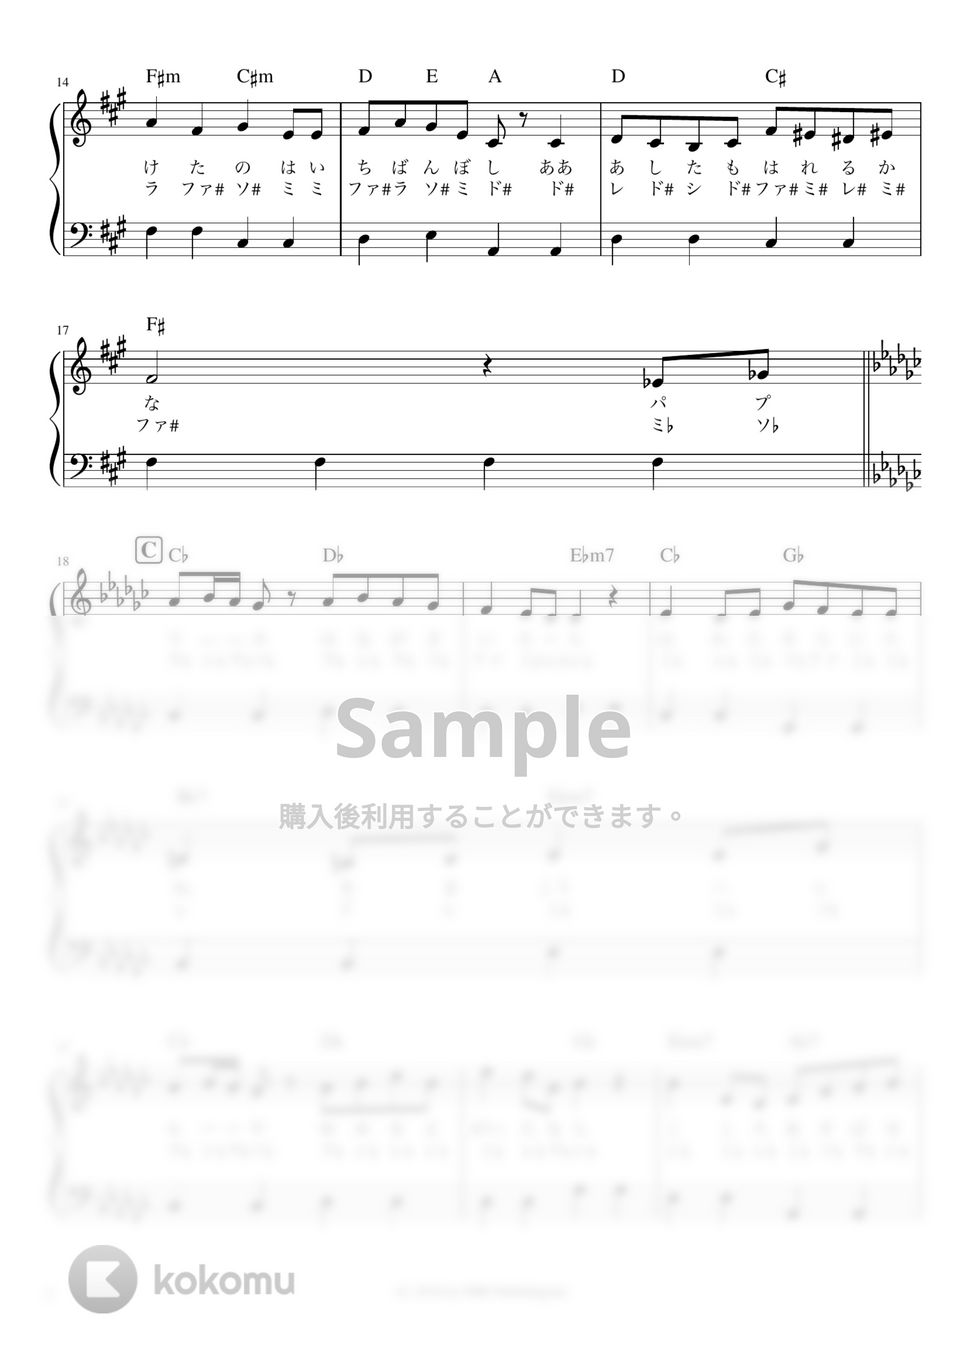  - パプリカ (かんたん 歌詞付き ドレミ付き 初心者) by piano.tokyo